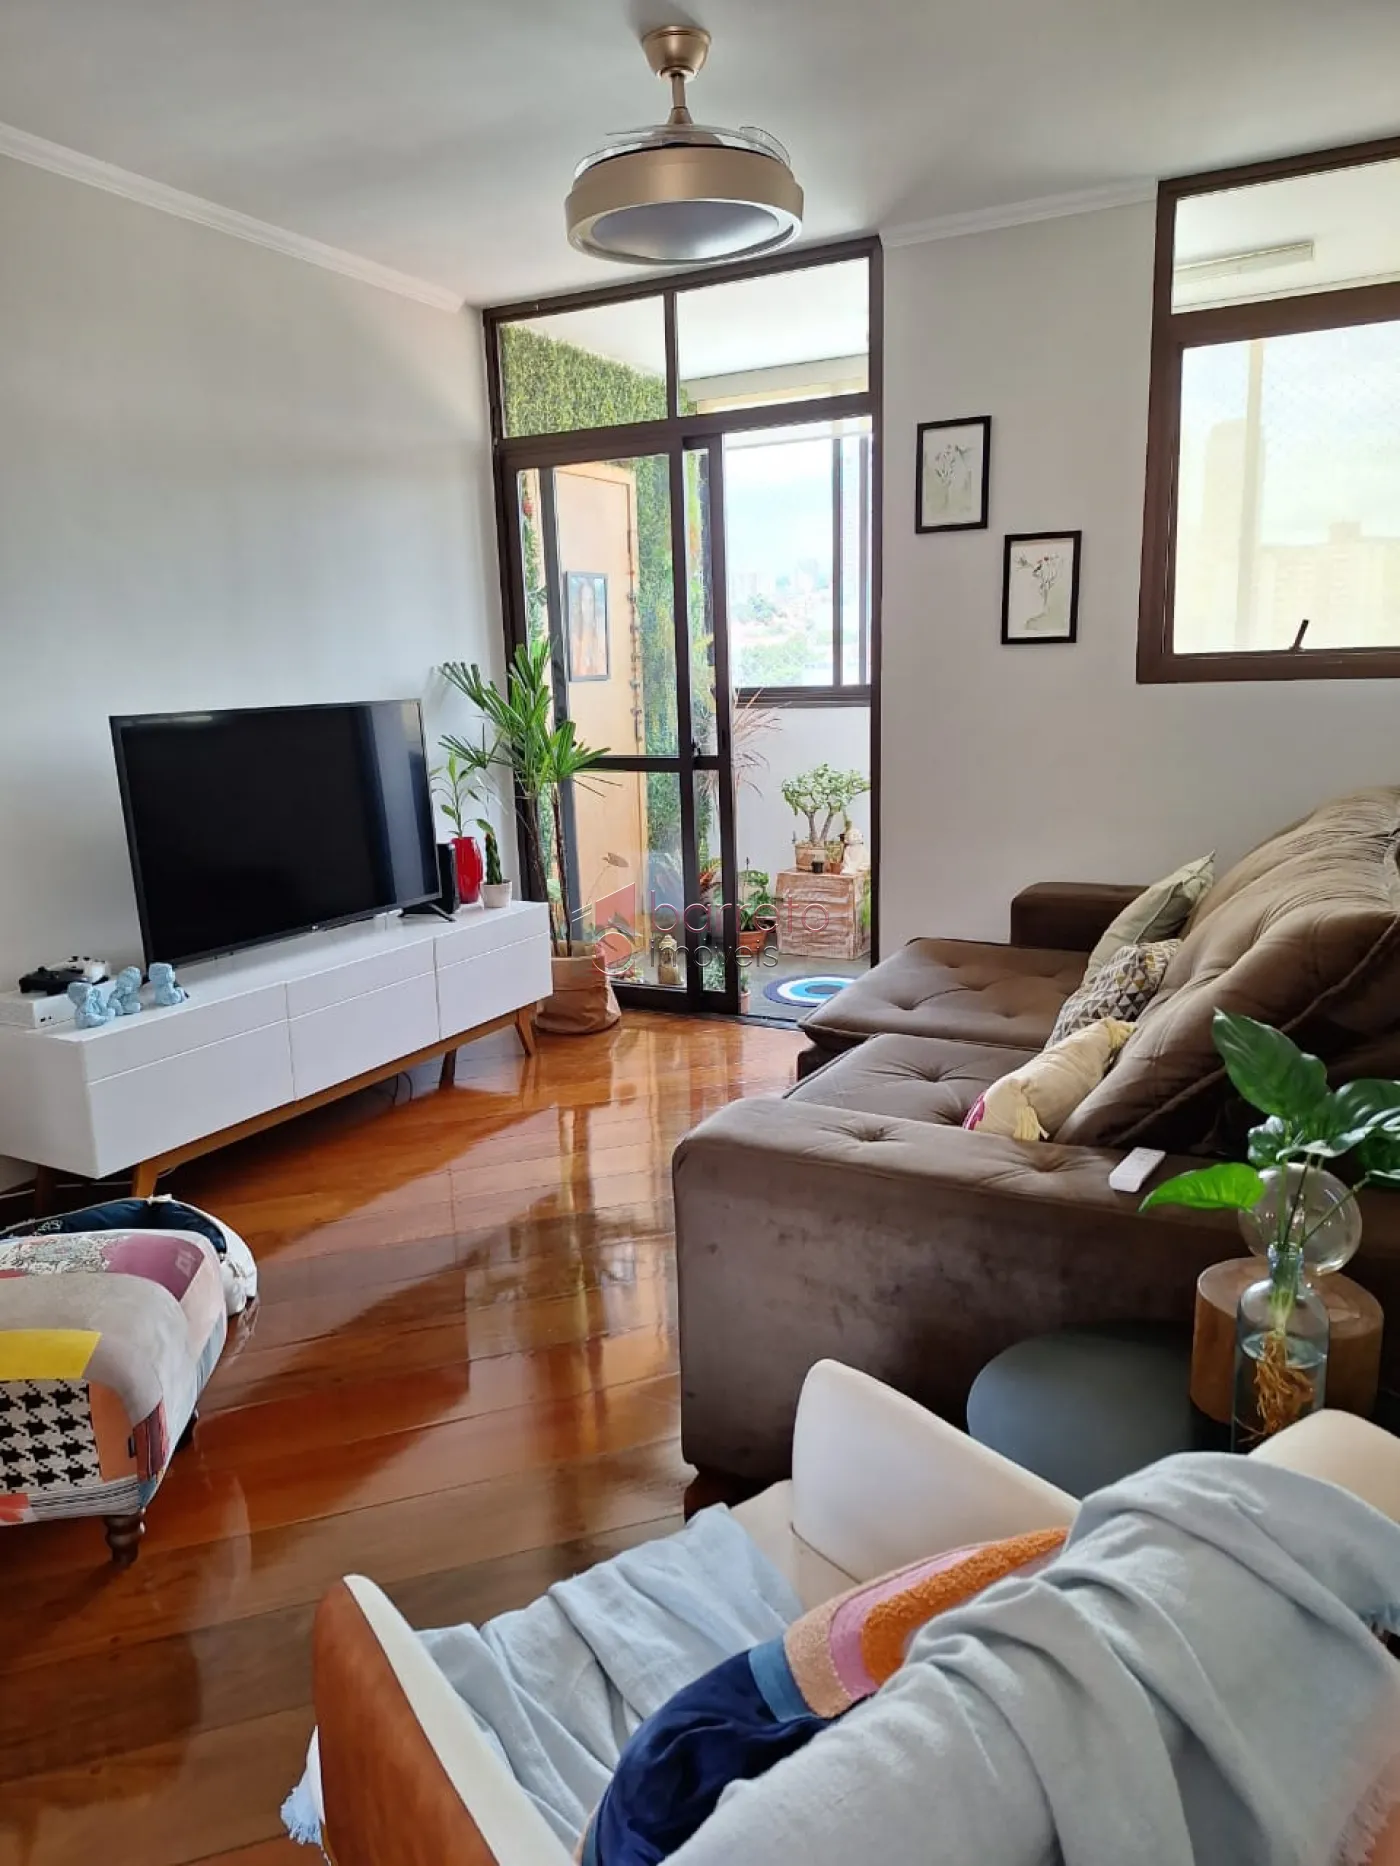 Comprar Apartamento / Padrão em Jundiaí R$ 650.000,00 - Foto 1